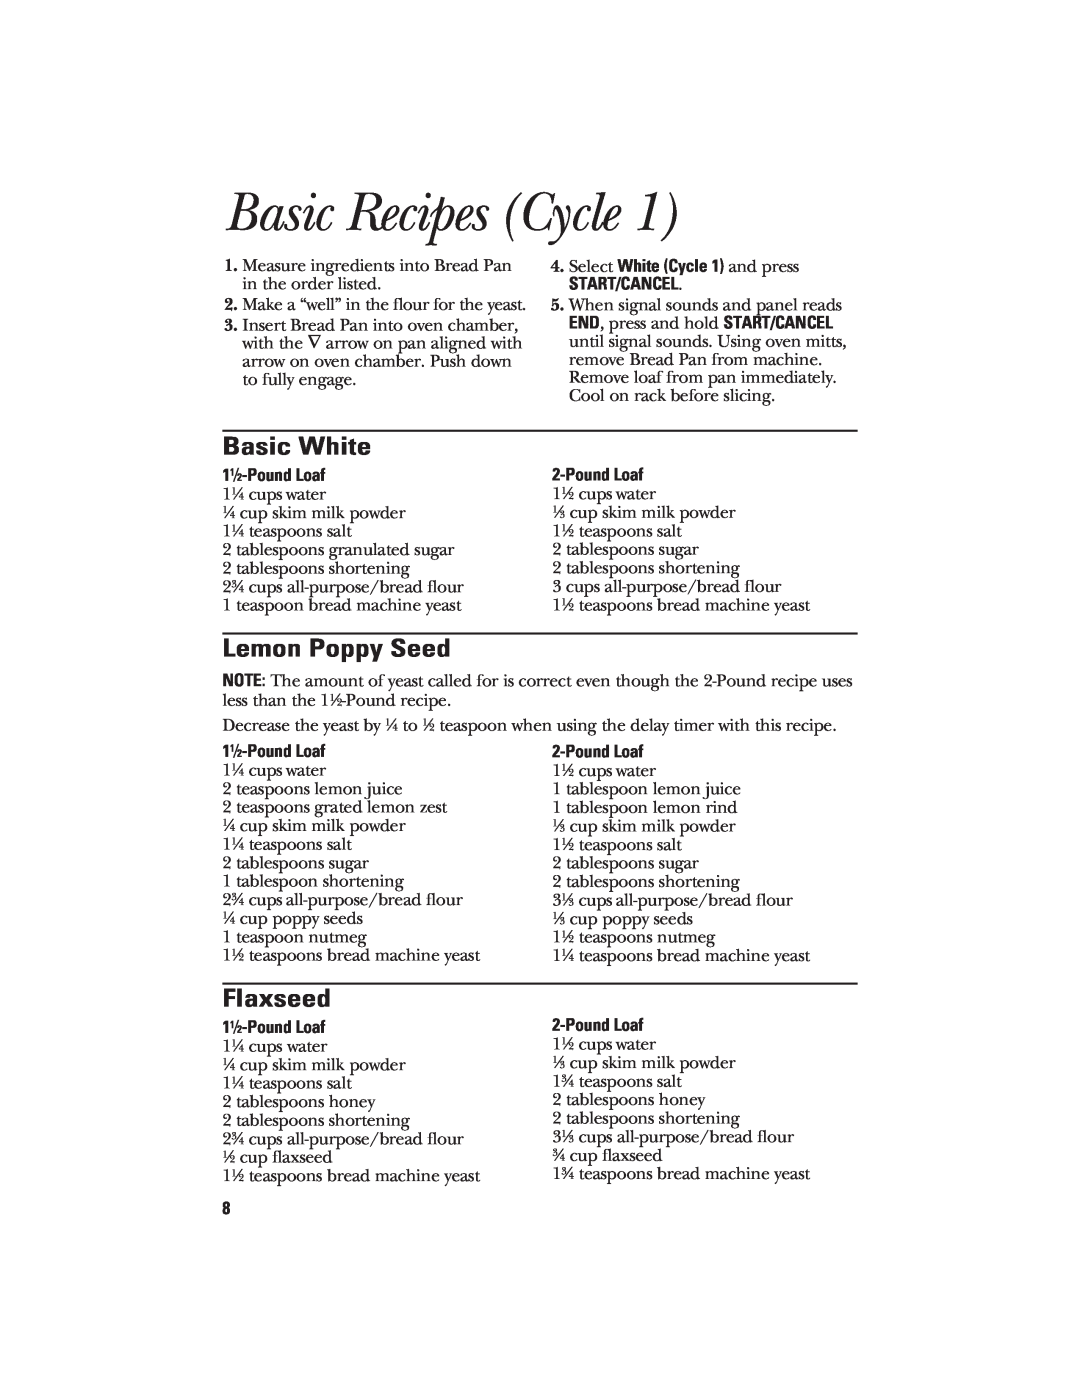 GE 106732, 840081600 quick start Basic Recipes Cycle, Basic White, Lemon Poppy Seed, Flaxseed, Start/Cancel, 11⁄2-Pound Loaf 